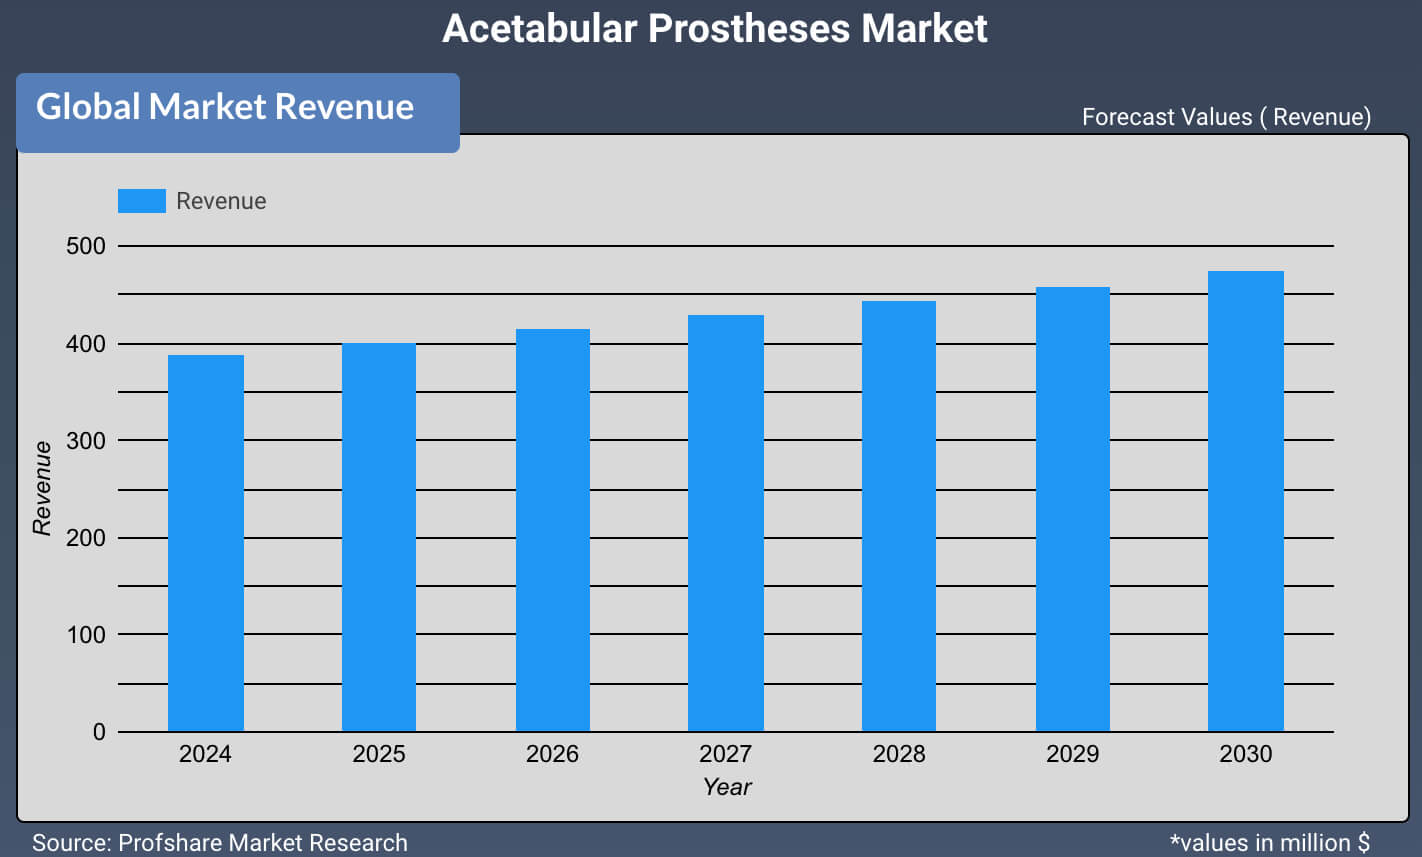 Acetabular Prostheses Market